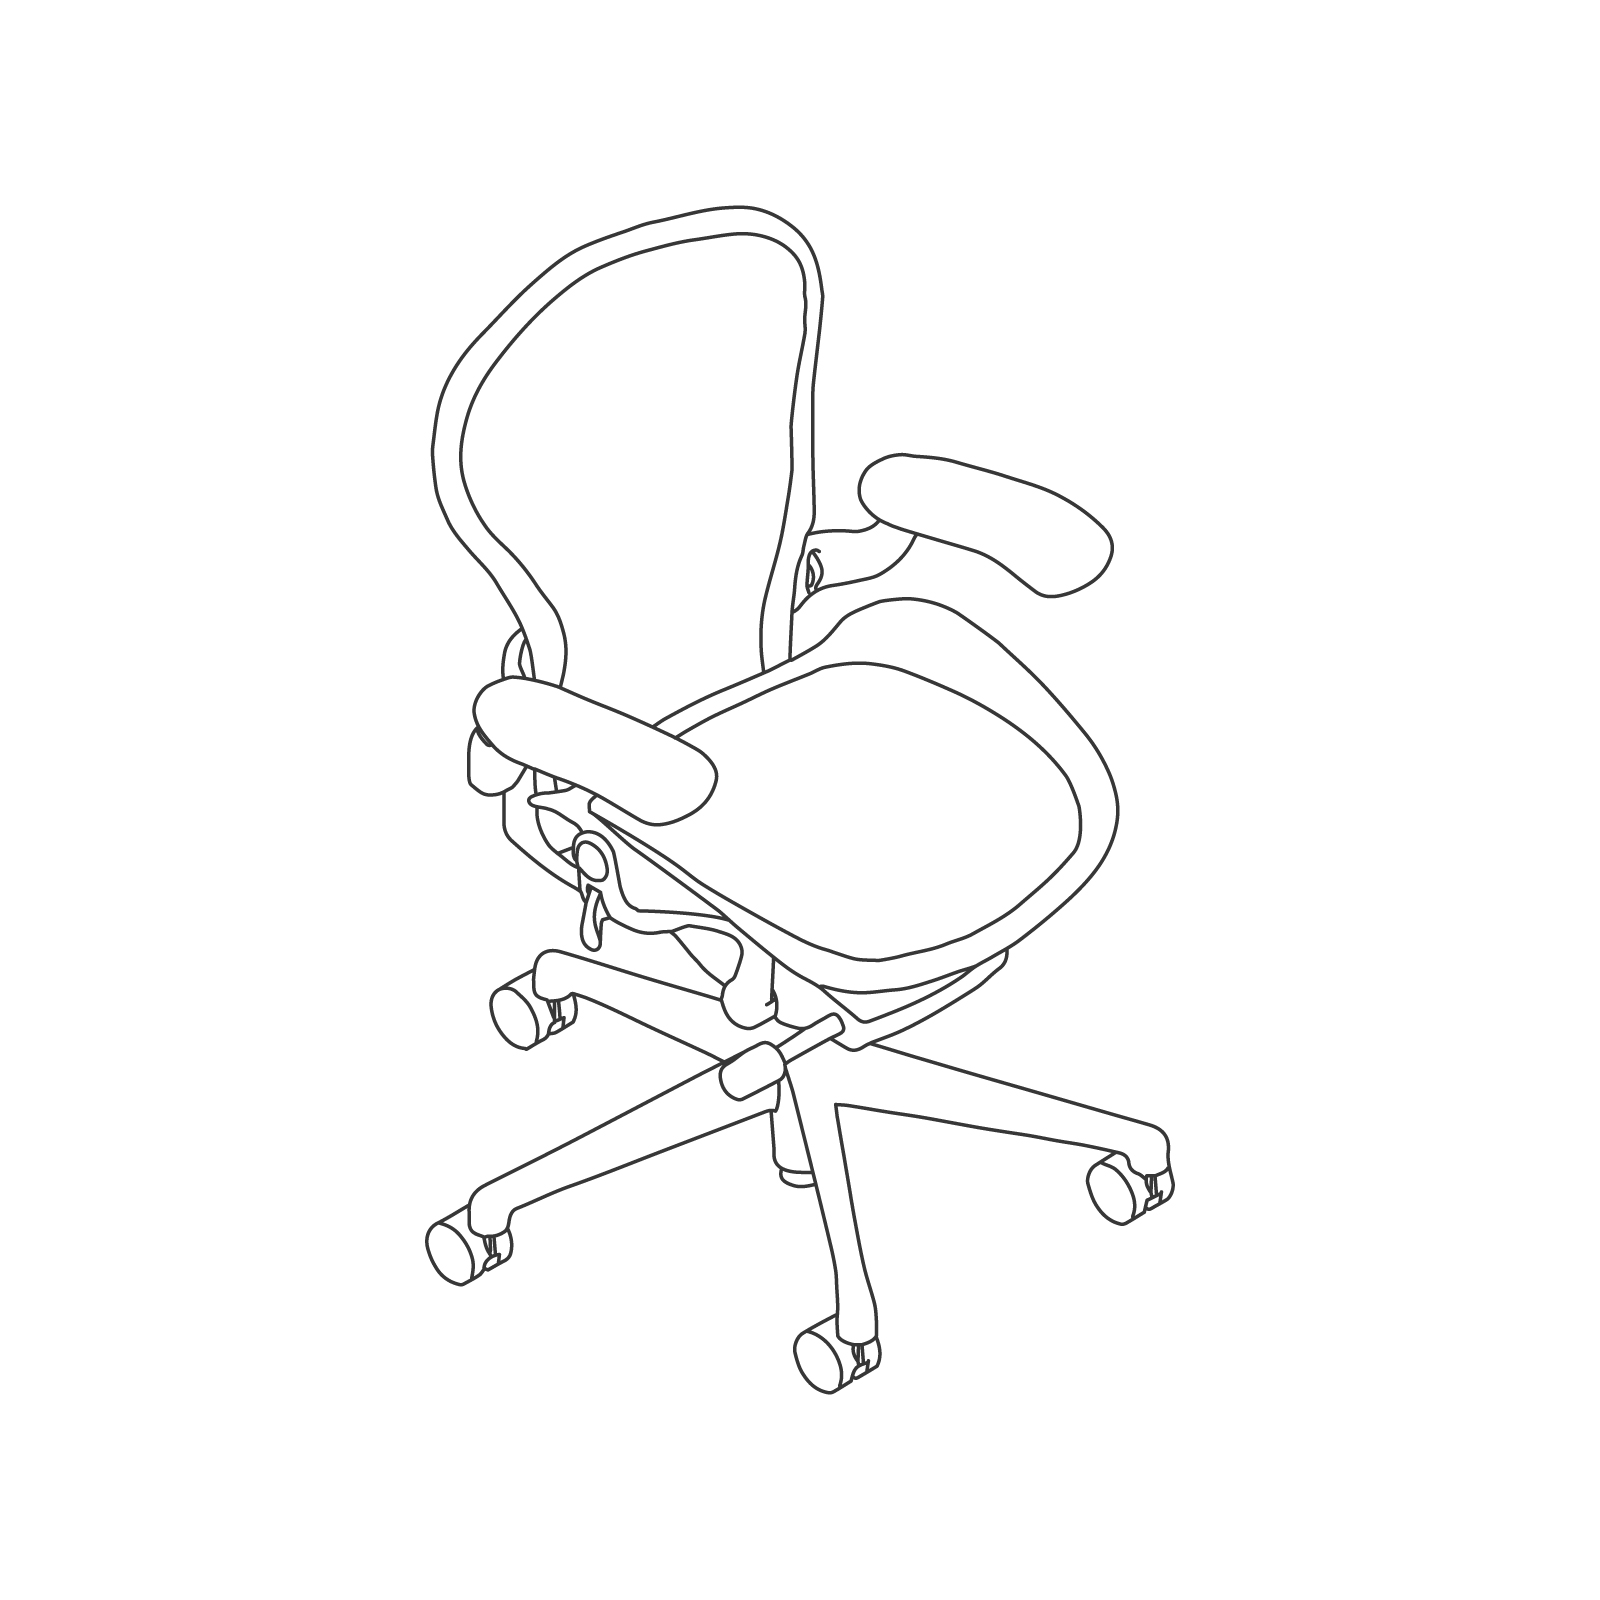 线描图 - Aeron座椅–B款–高度可调式扶手